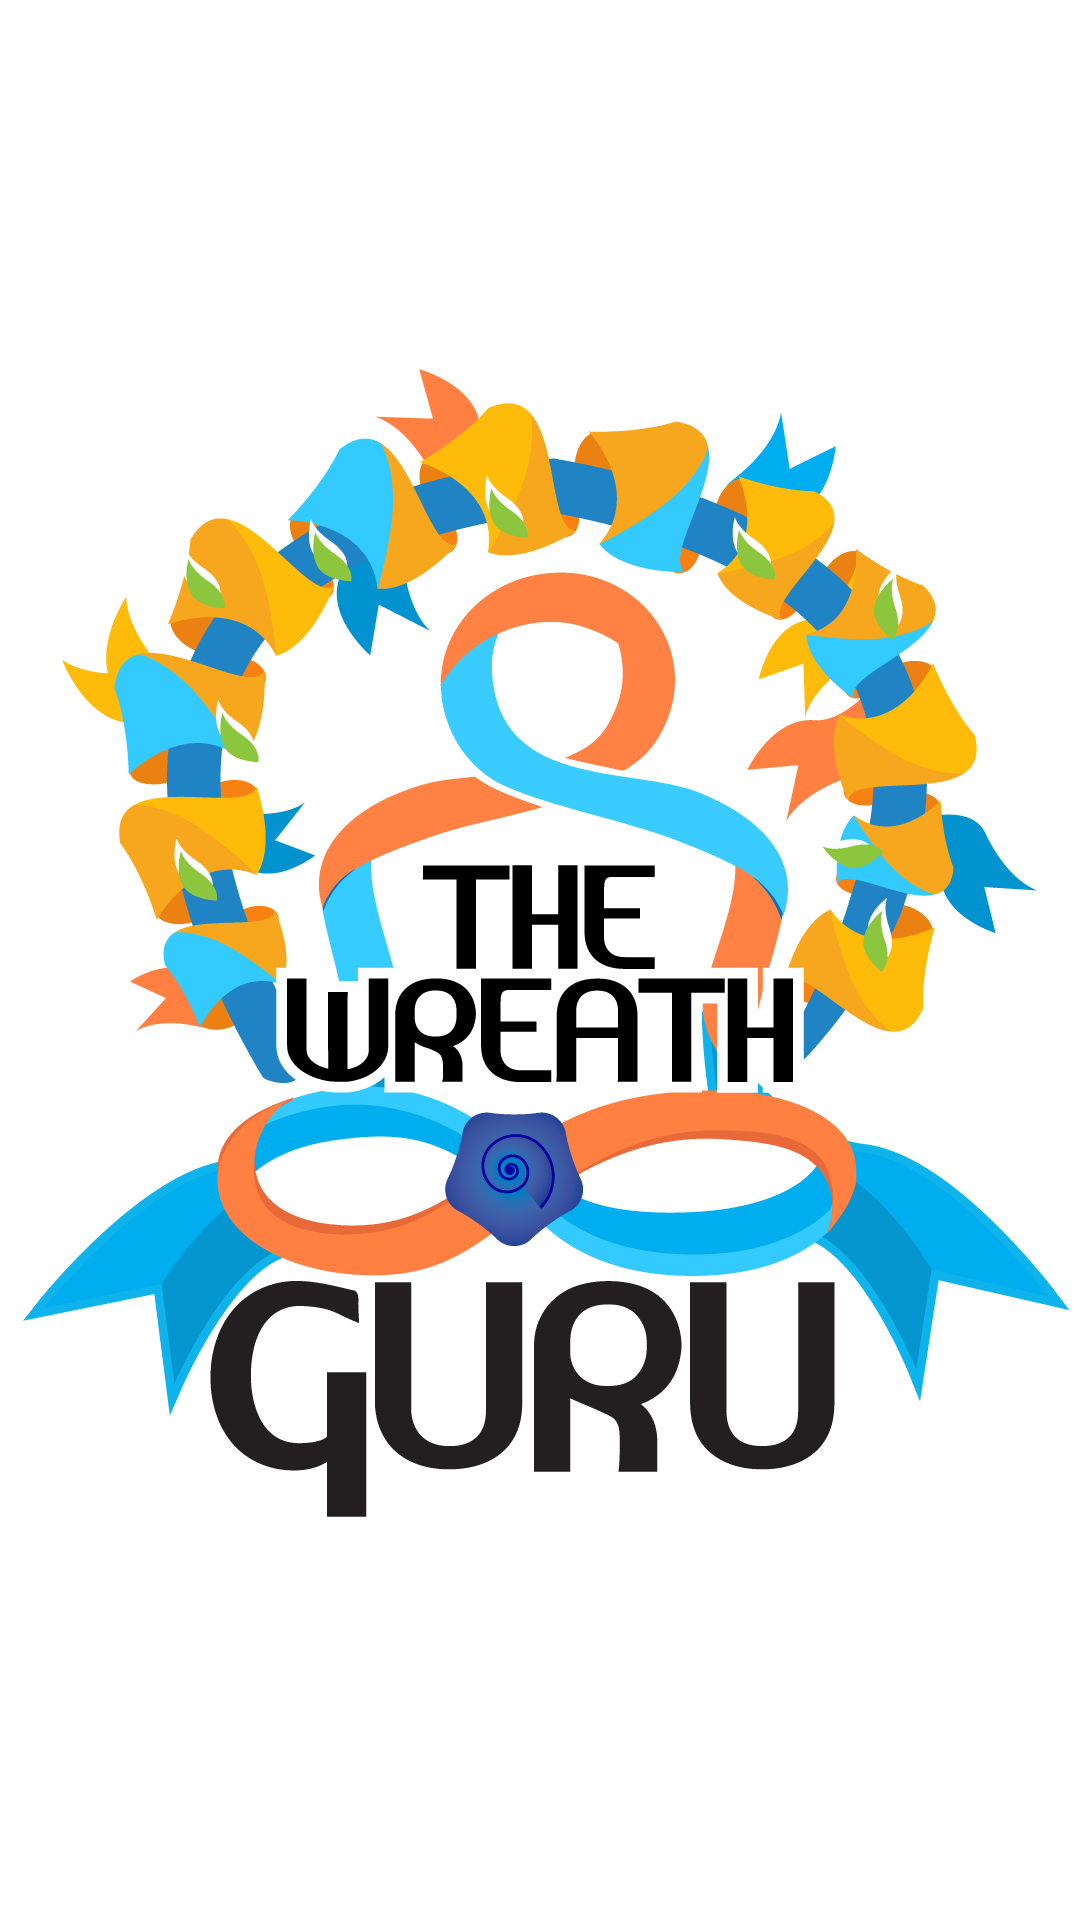 THE WREATH GURU